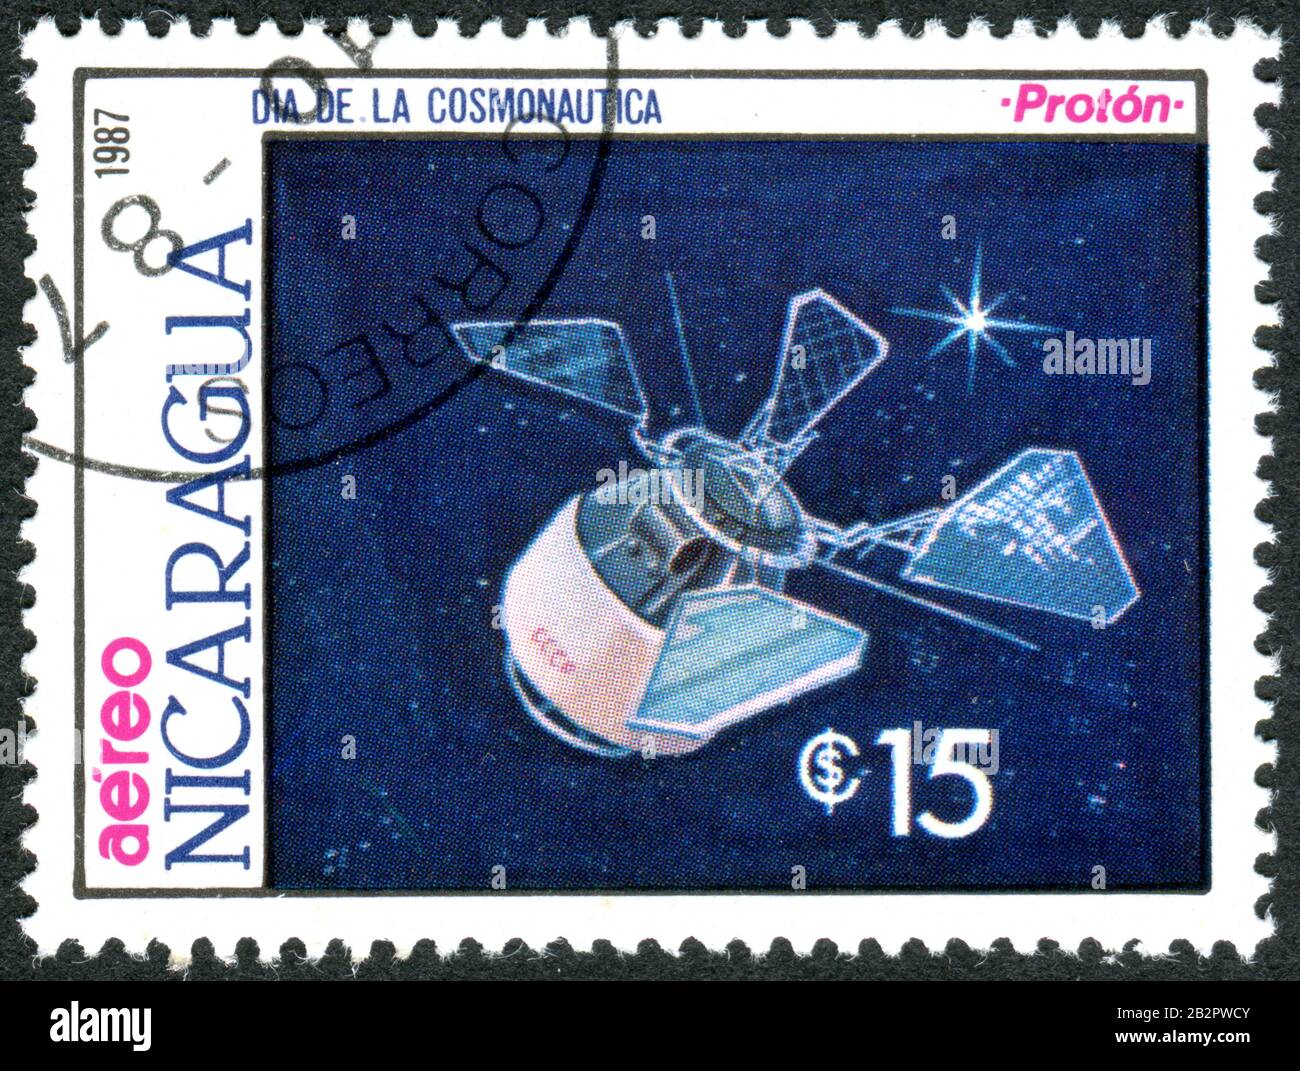 Ein in Nicaragua aufgedruckter Stempel, der dem Kosmonautiktag gewidmet ist, stellte ein Modell der sowjetischen Erdbeobachtungssatelliten dar - Proton, ca. 1987 Stockfoto